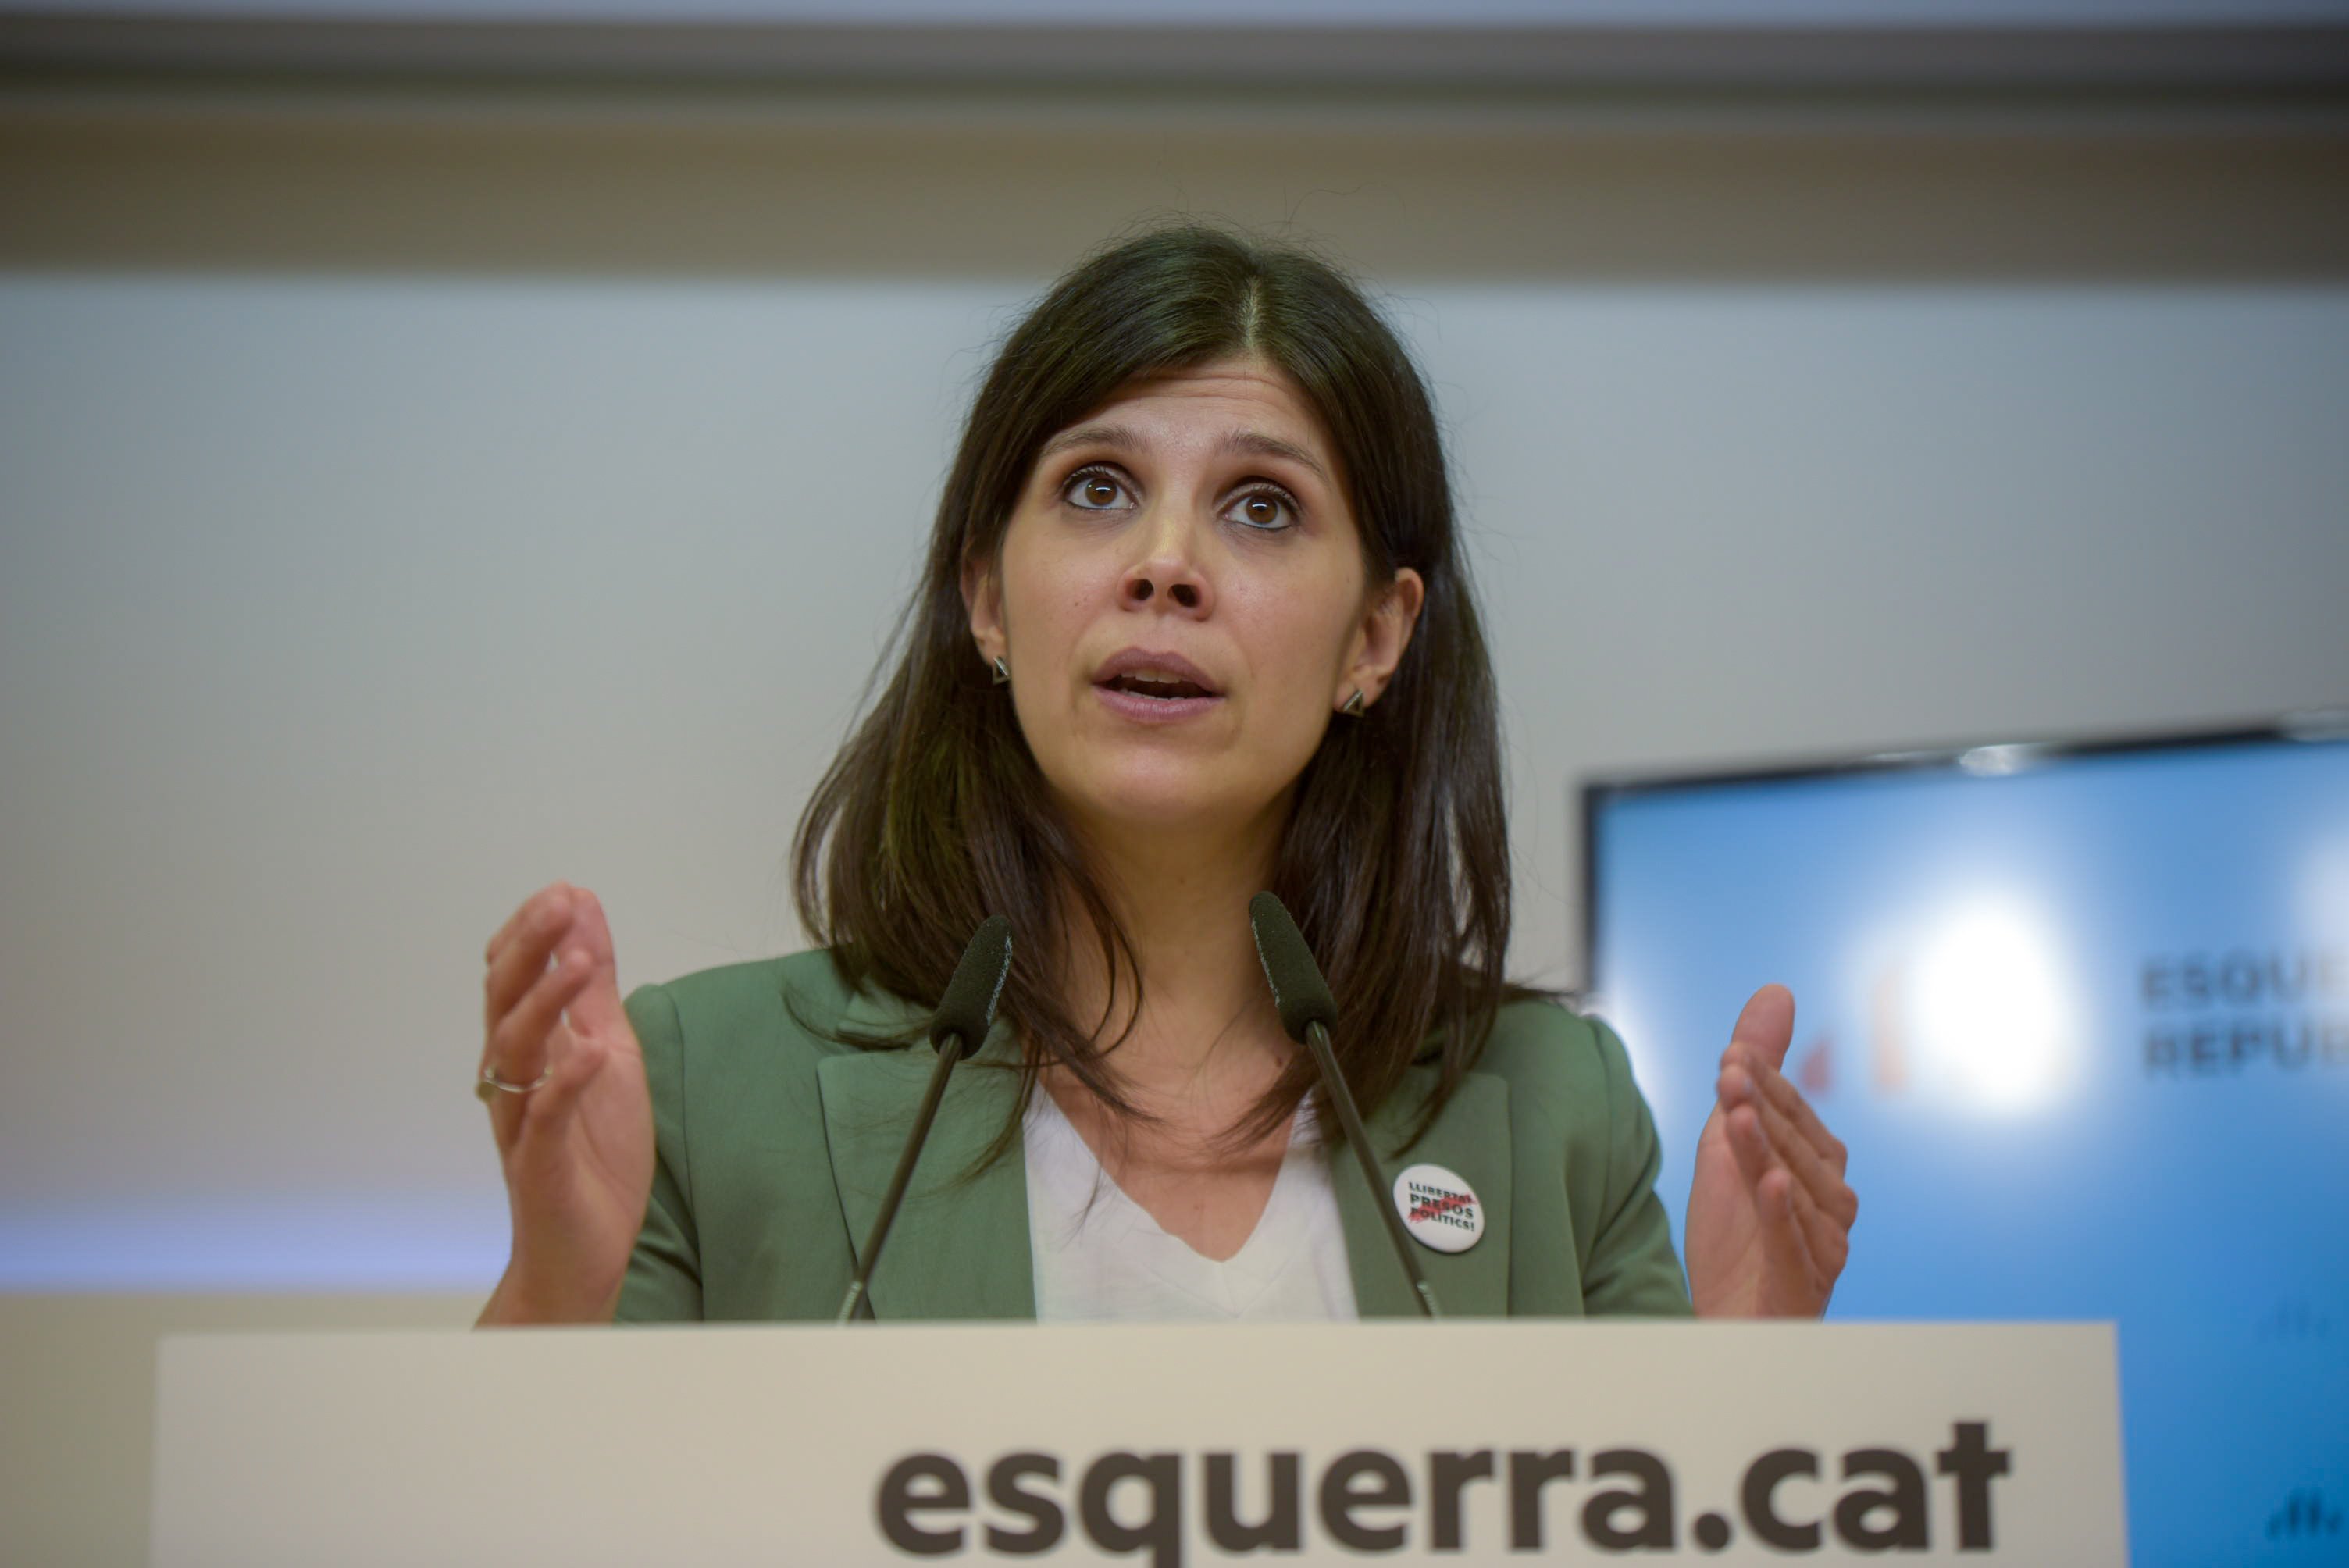 ERC emprendrà accions legals si Sánchez no rectifica el decret de desconfinament